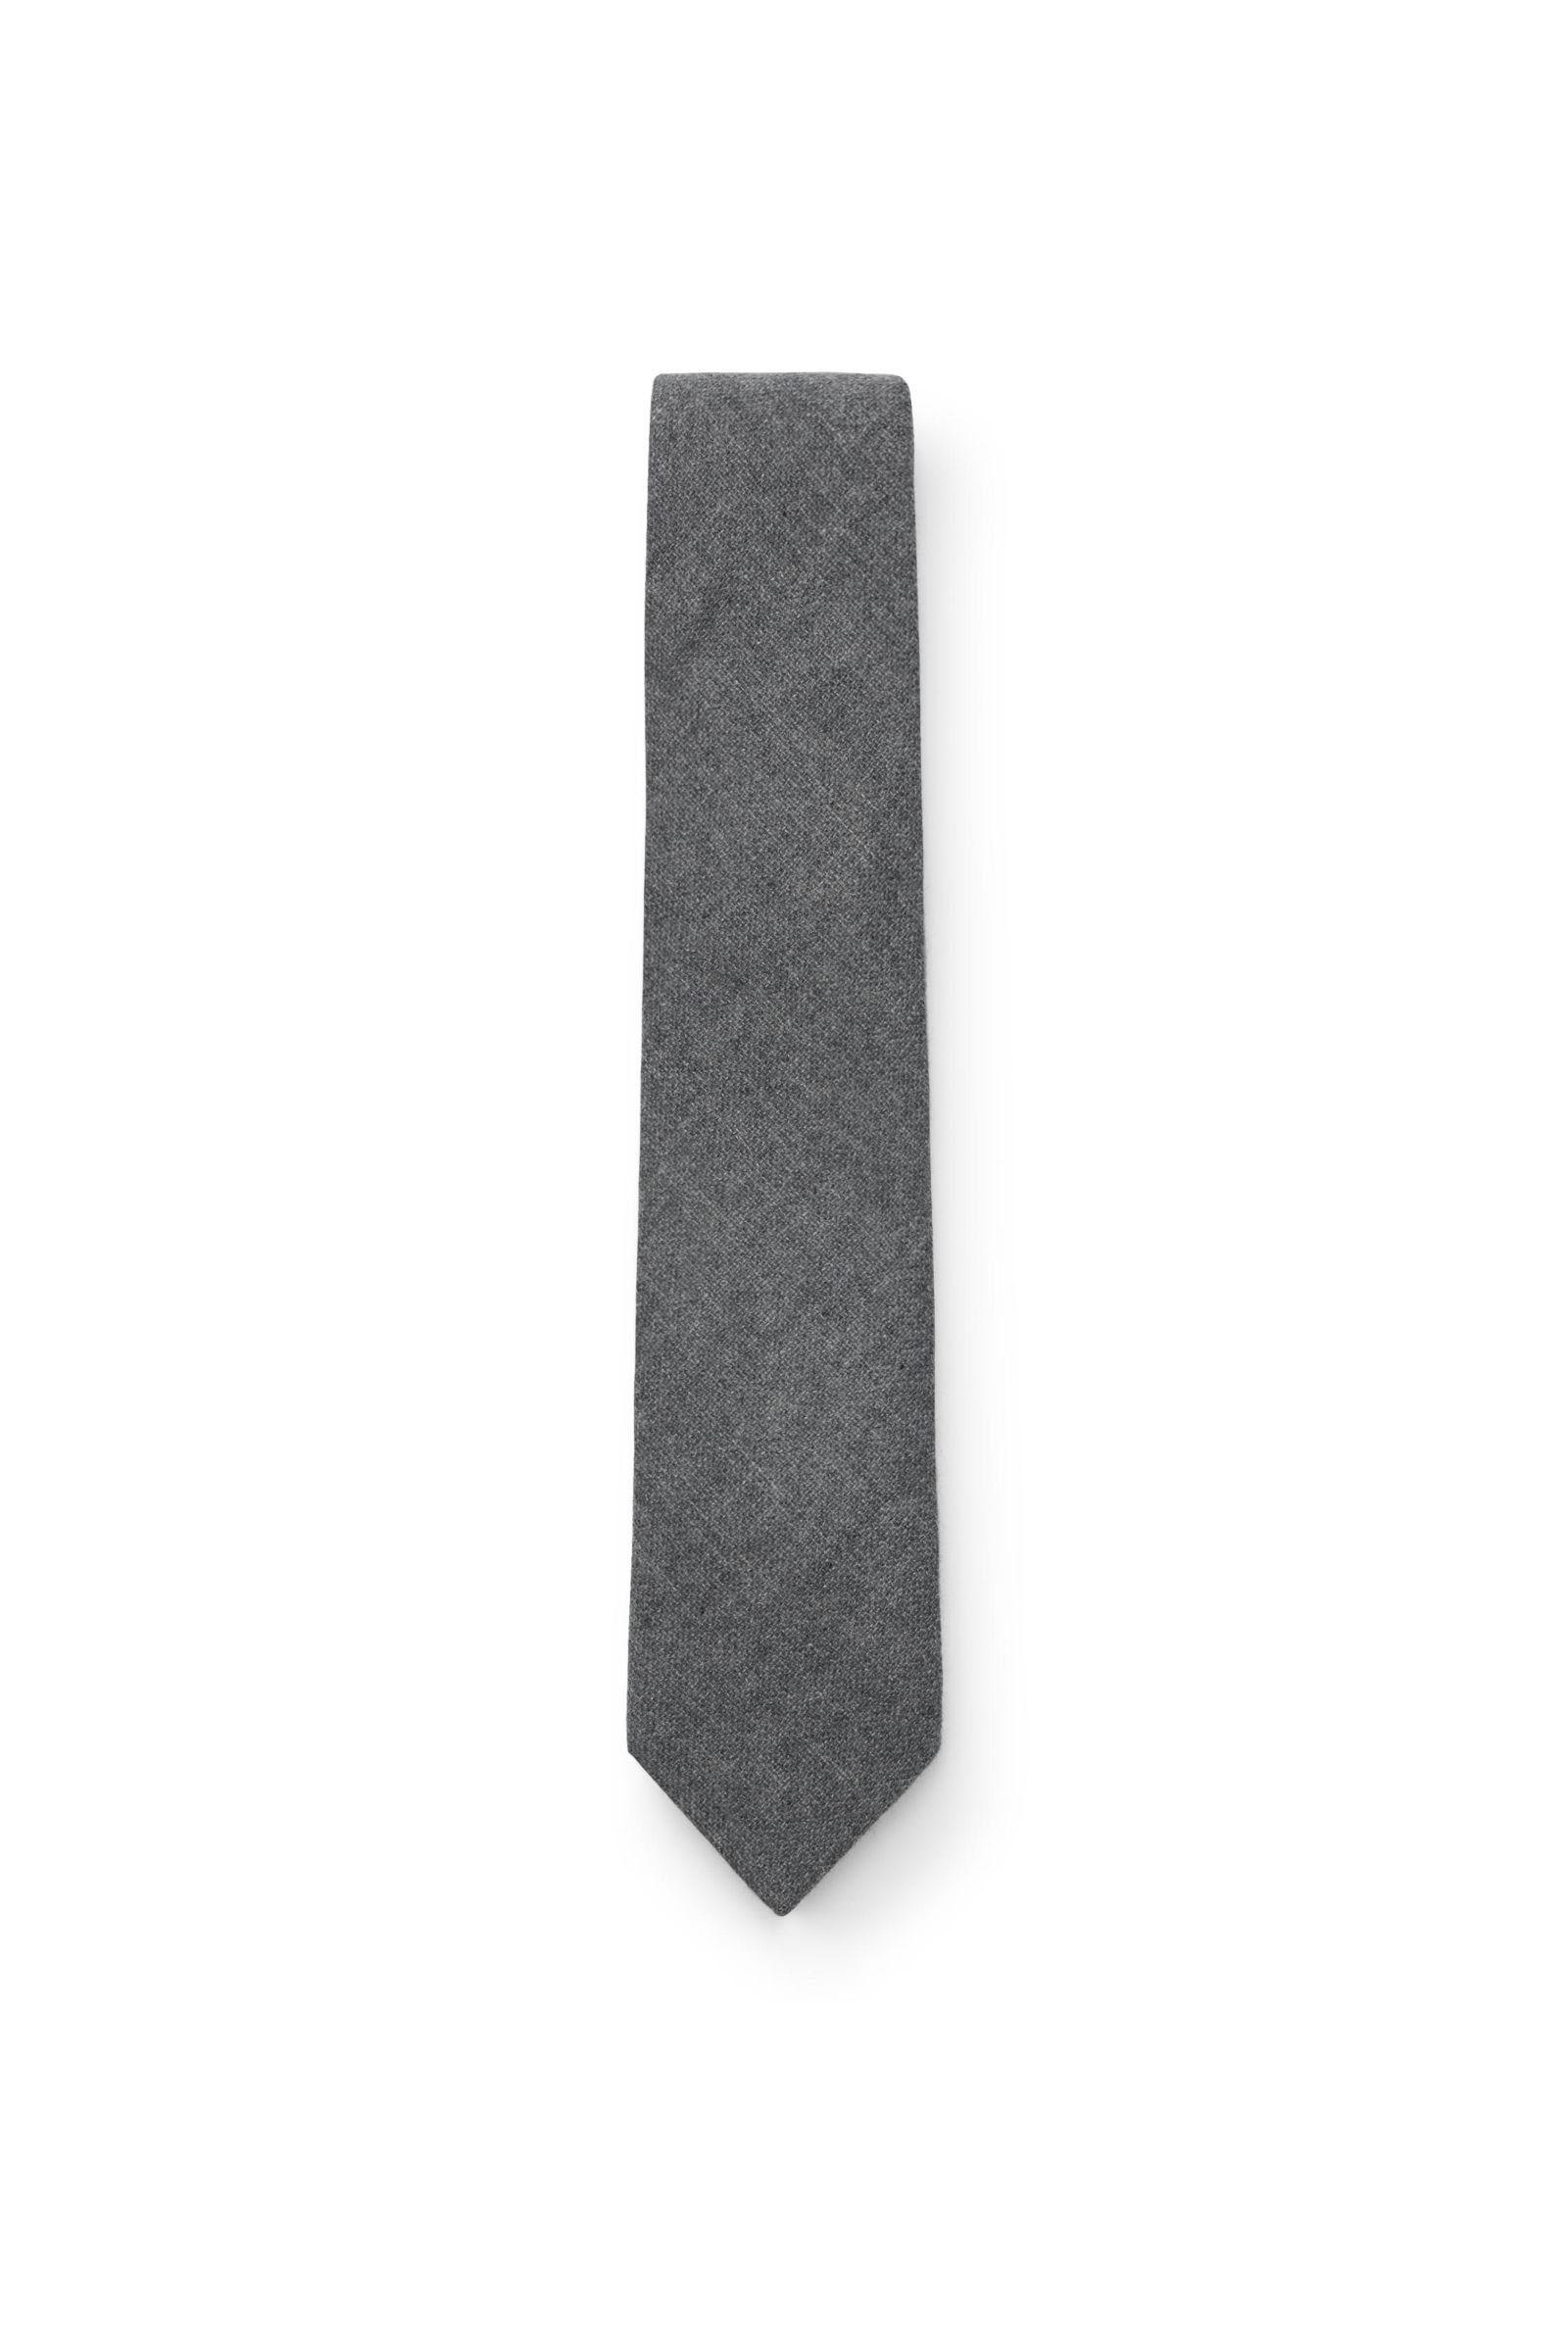 Cashmere tie grey